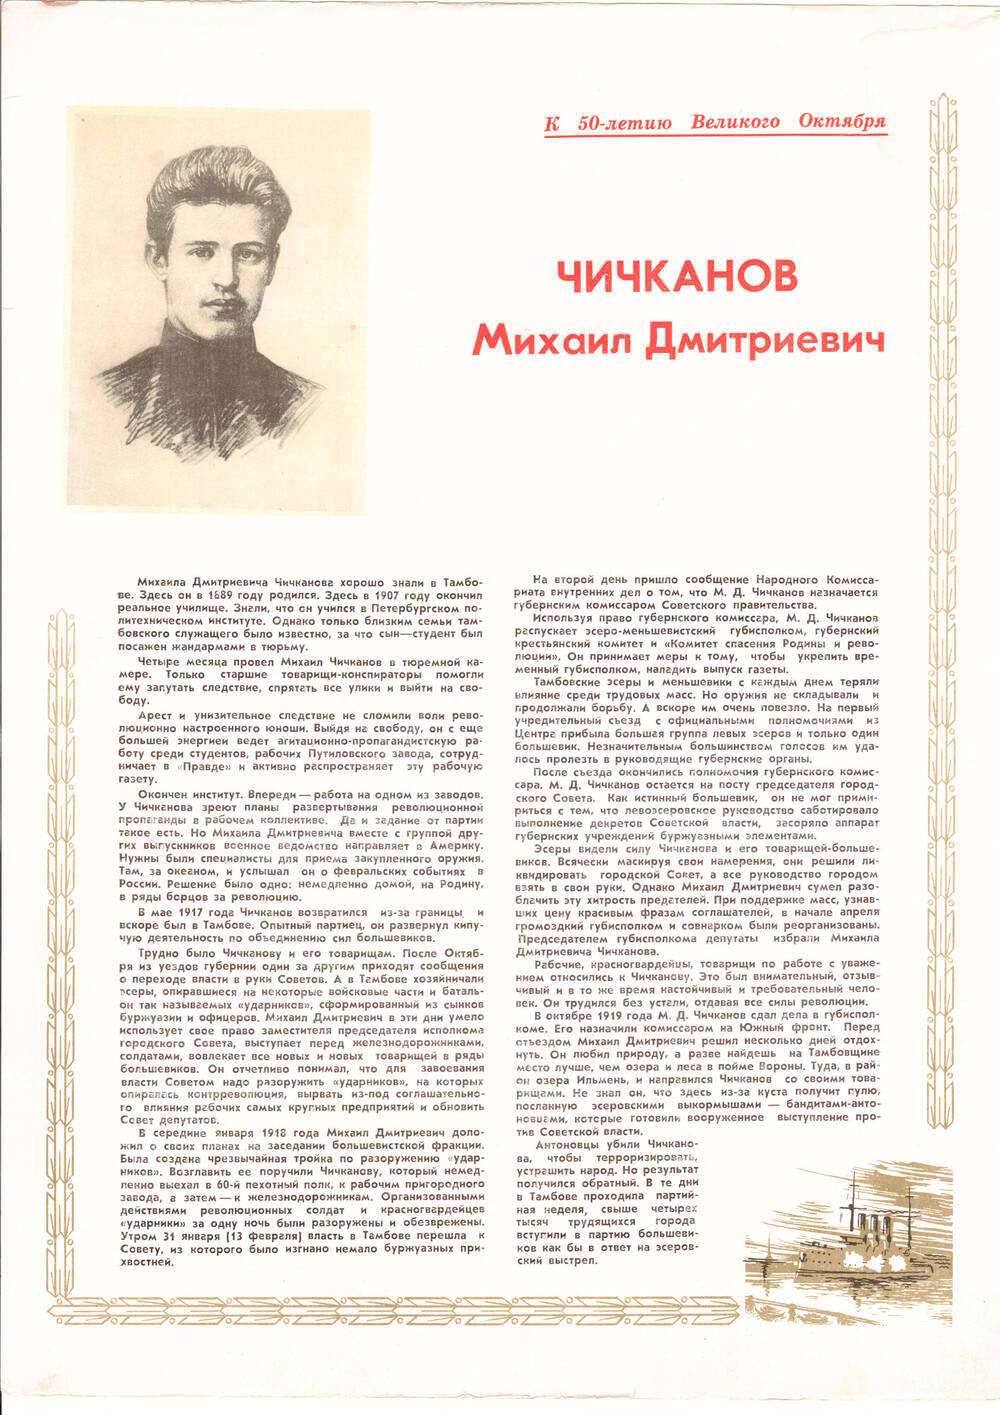 Листовка о Чичканове Михаиле Дмитриевиче